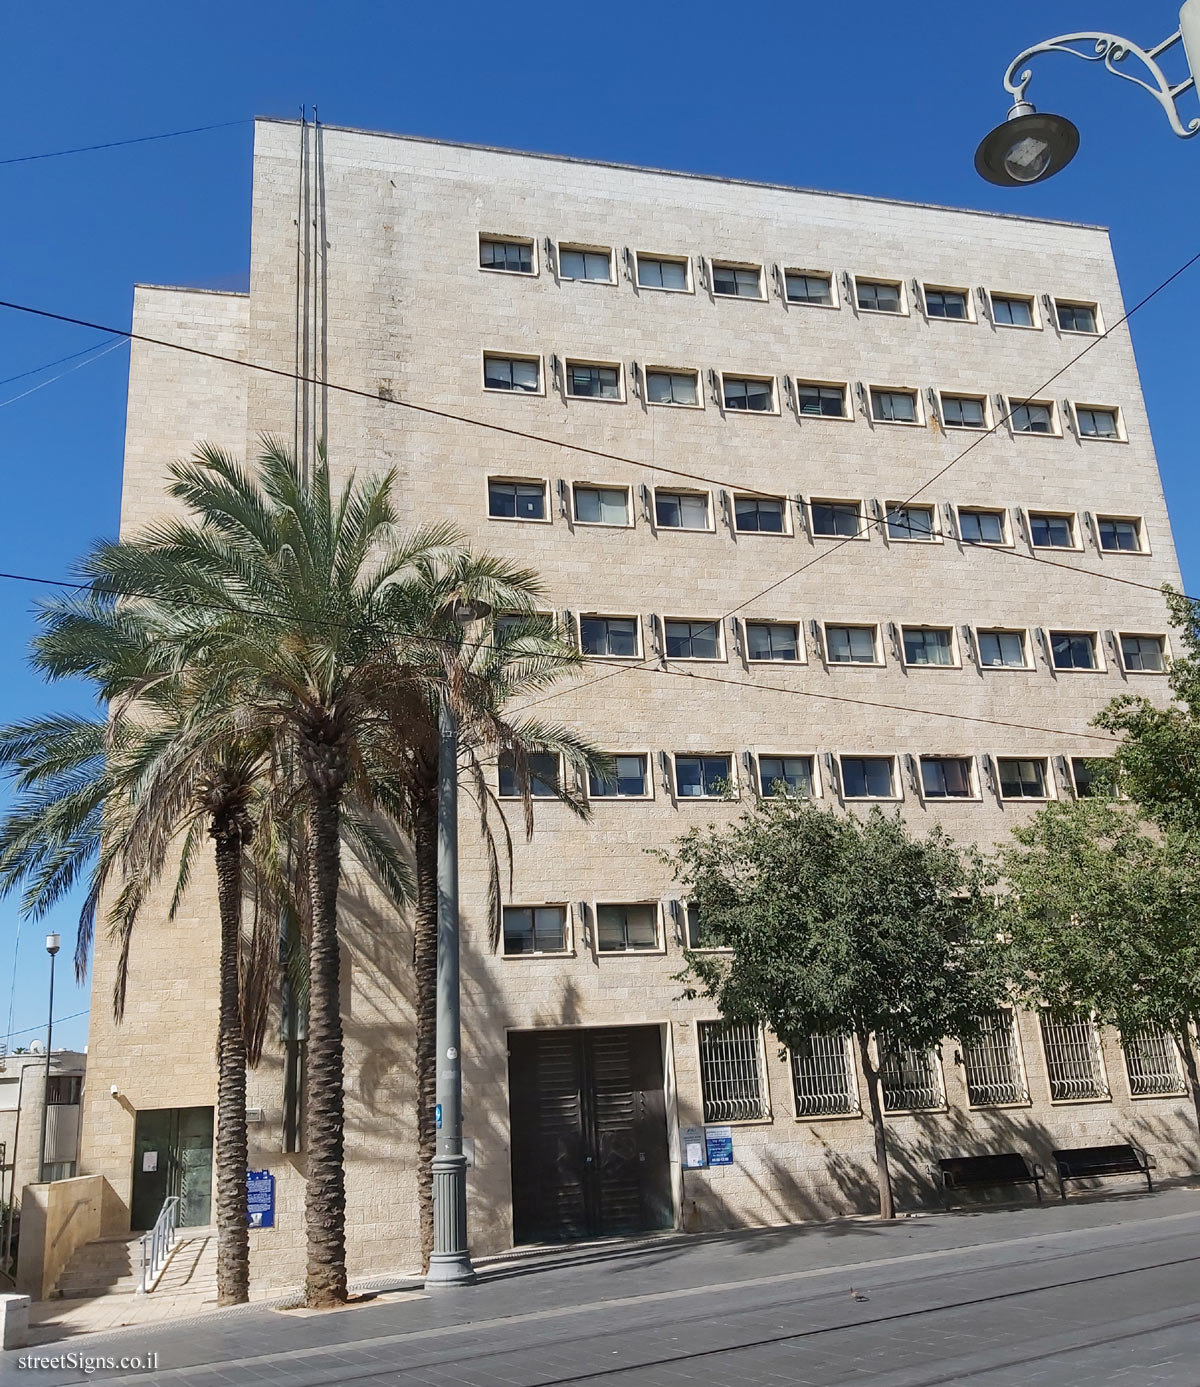 Jerusalem - Heritage Sites in Israel - Anglo-Palestine Bank - Jaffa St 17, Jerusalem